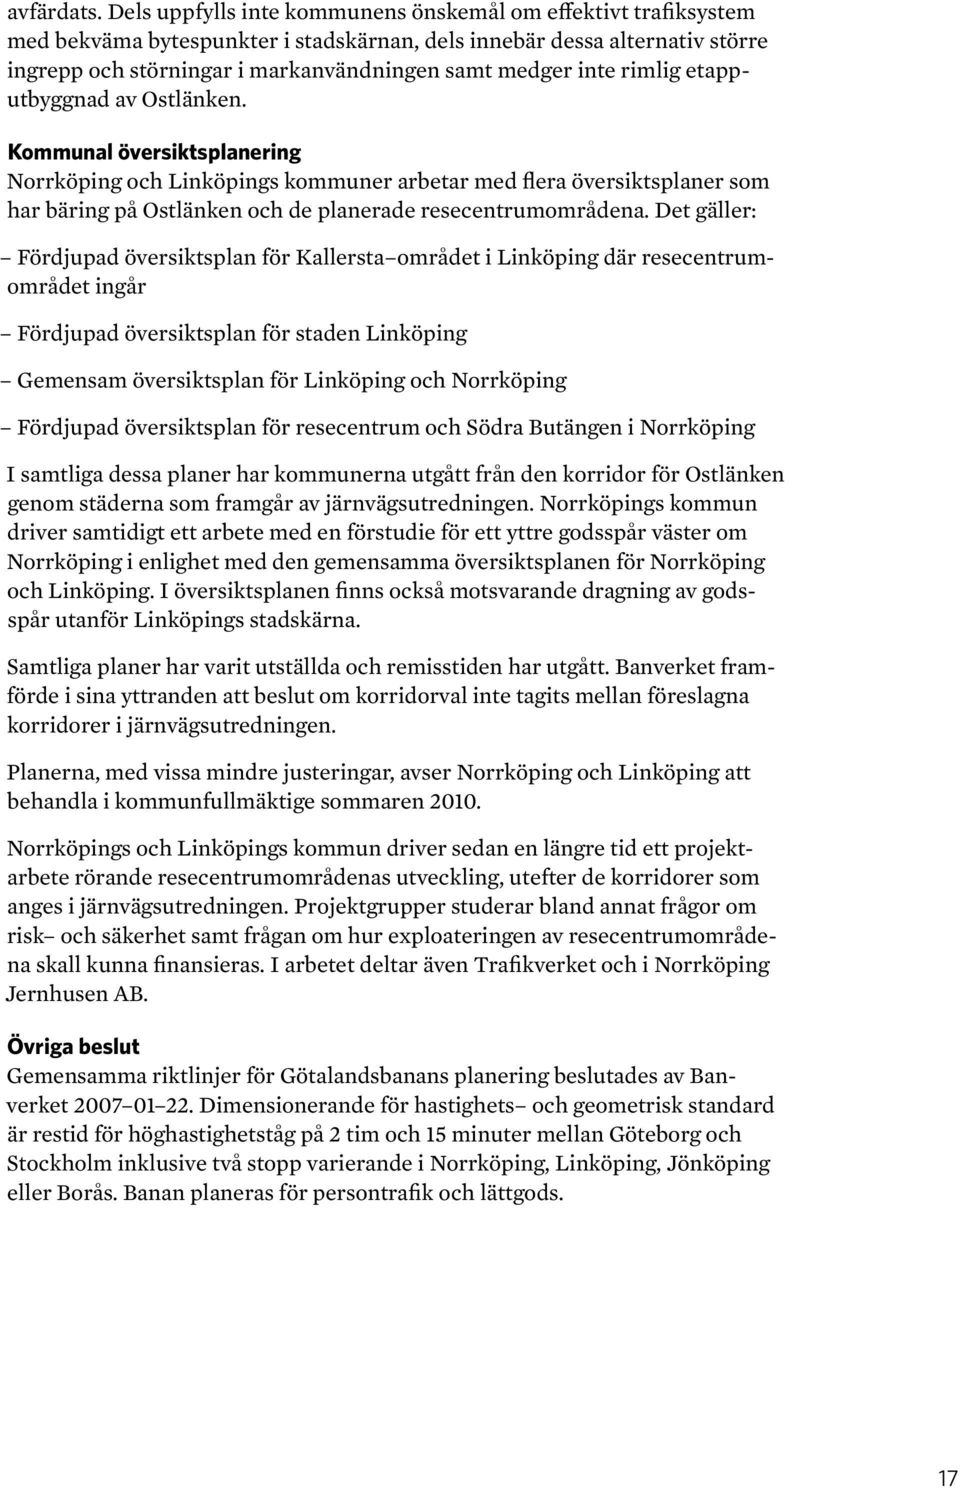 rimlig etapputbyggnad av Ostlänken. Kommunal översiktsplanering Norrköping och Linköpings kommuner arbetar med flera översiktsplaner som har bäring på Ostlänken och de planerade resecentrumområdena.